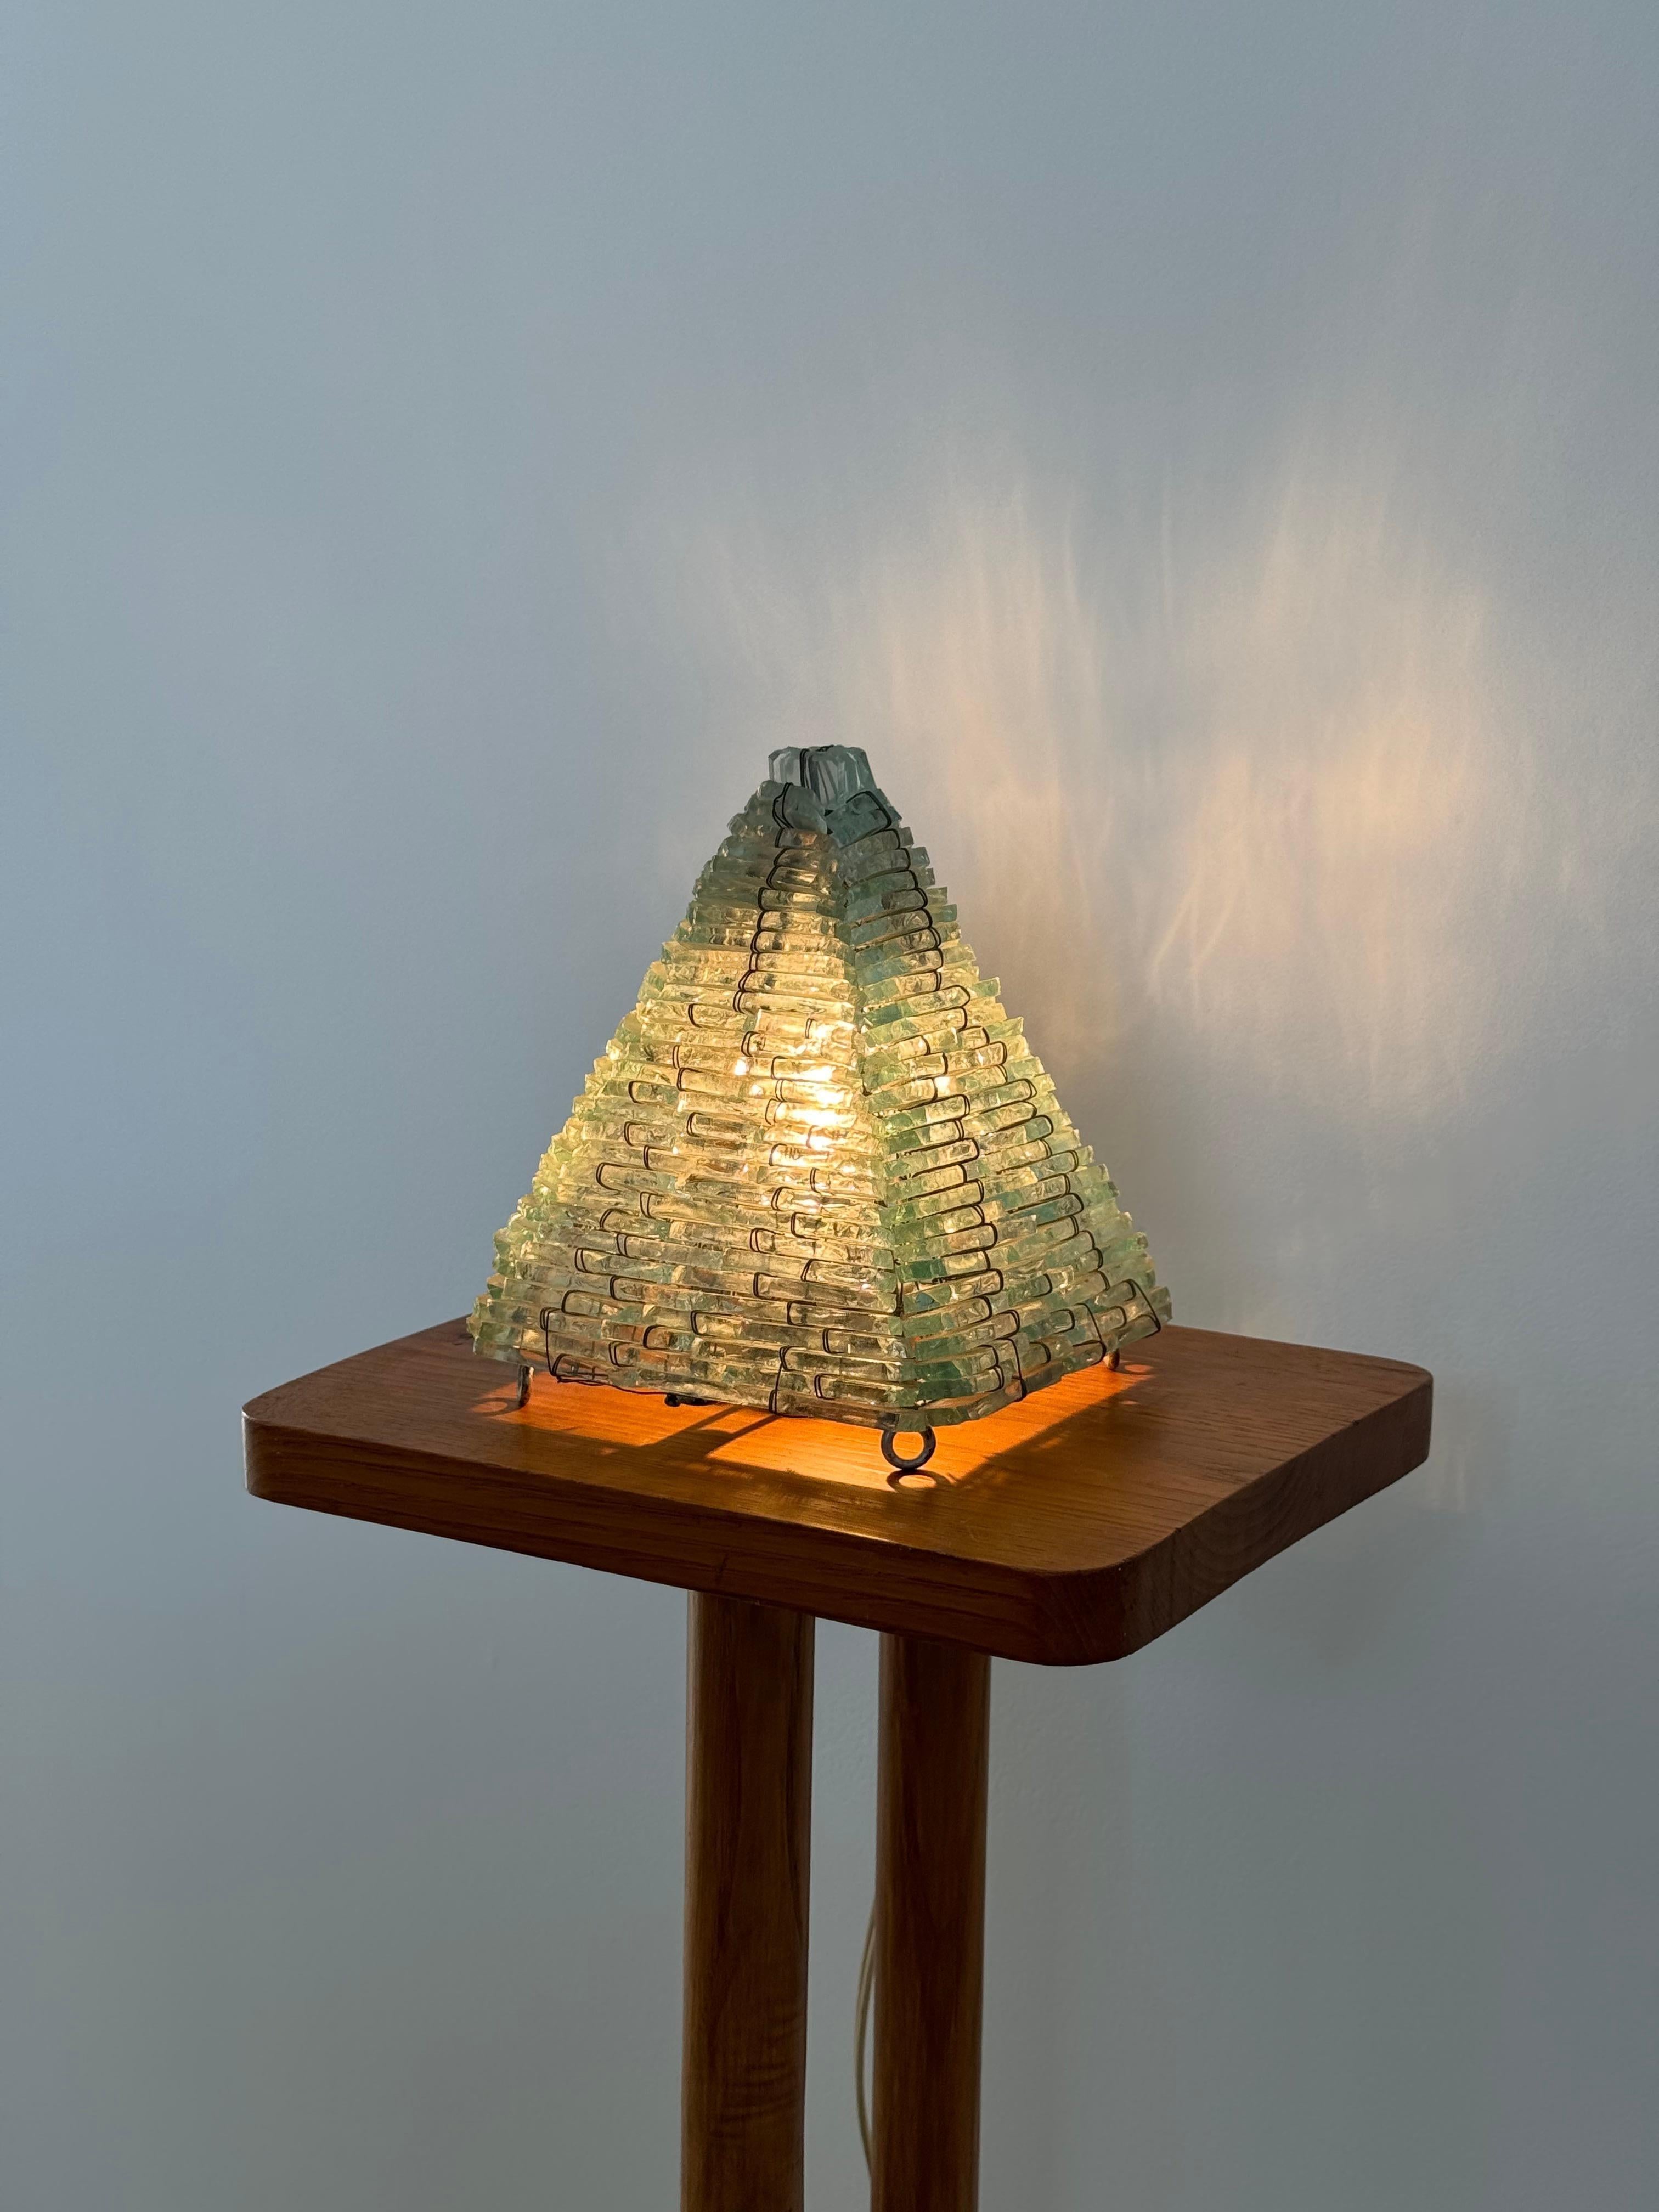 Lampe sculpturale en forme de pyramide. Assemblage des blocs de verre. Lampe entièrement fabriquée à la main.
Eclairage et lumière diffusés en toute douceur.
Design/One des années 1960.

livraison gratuite 